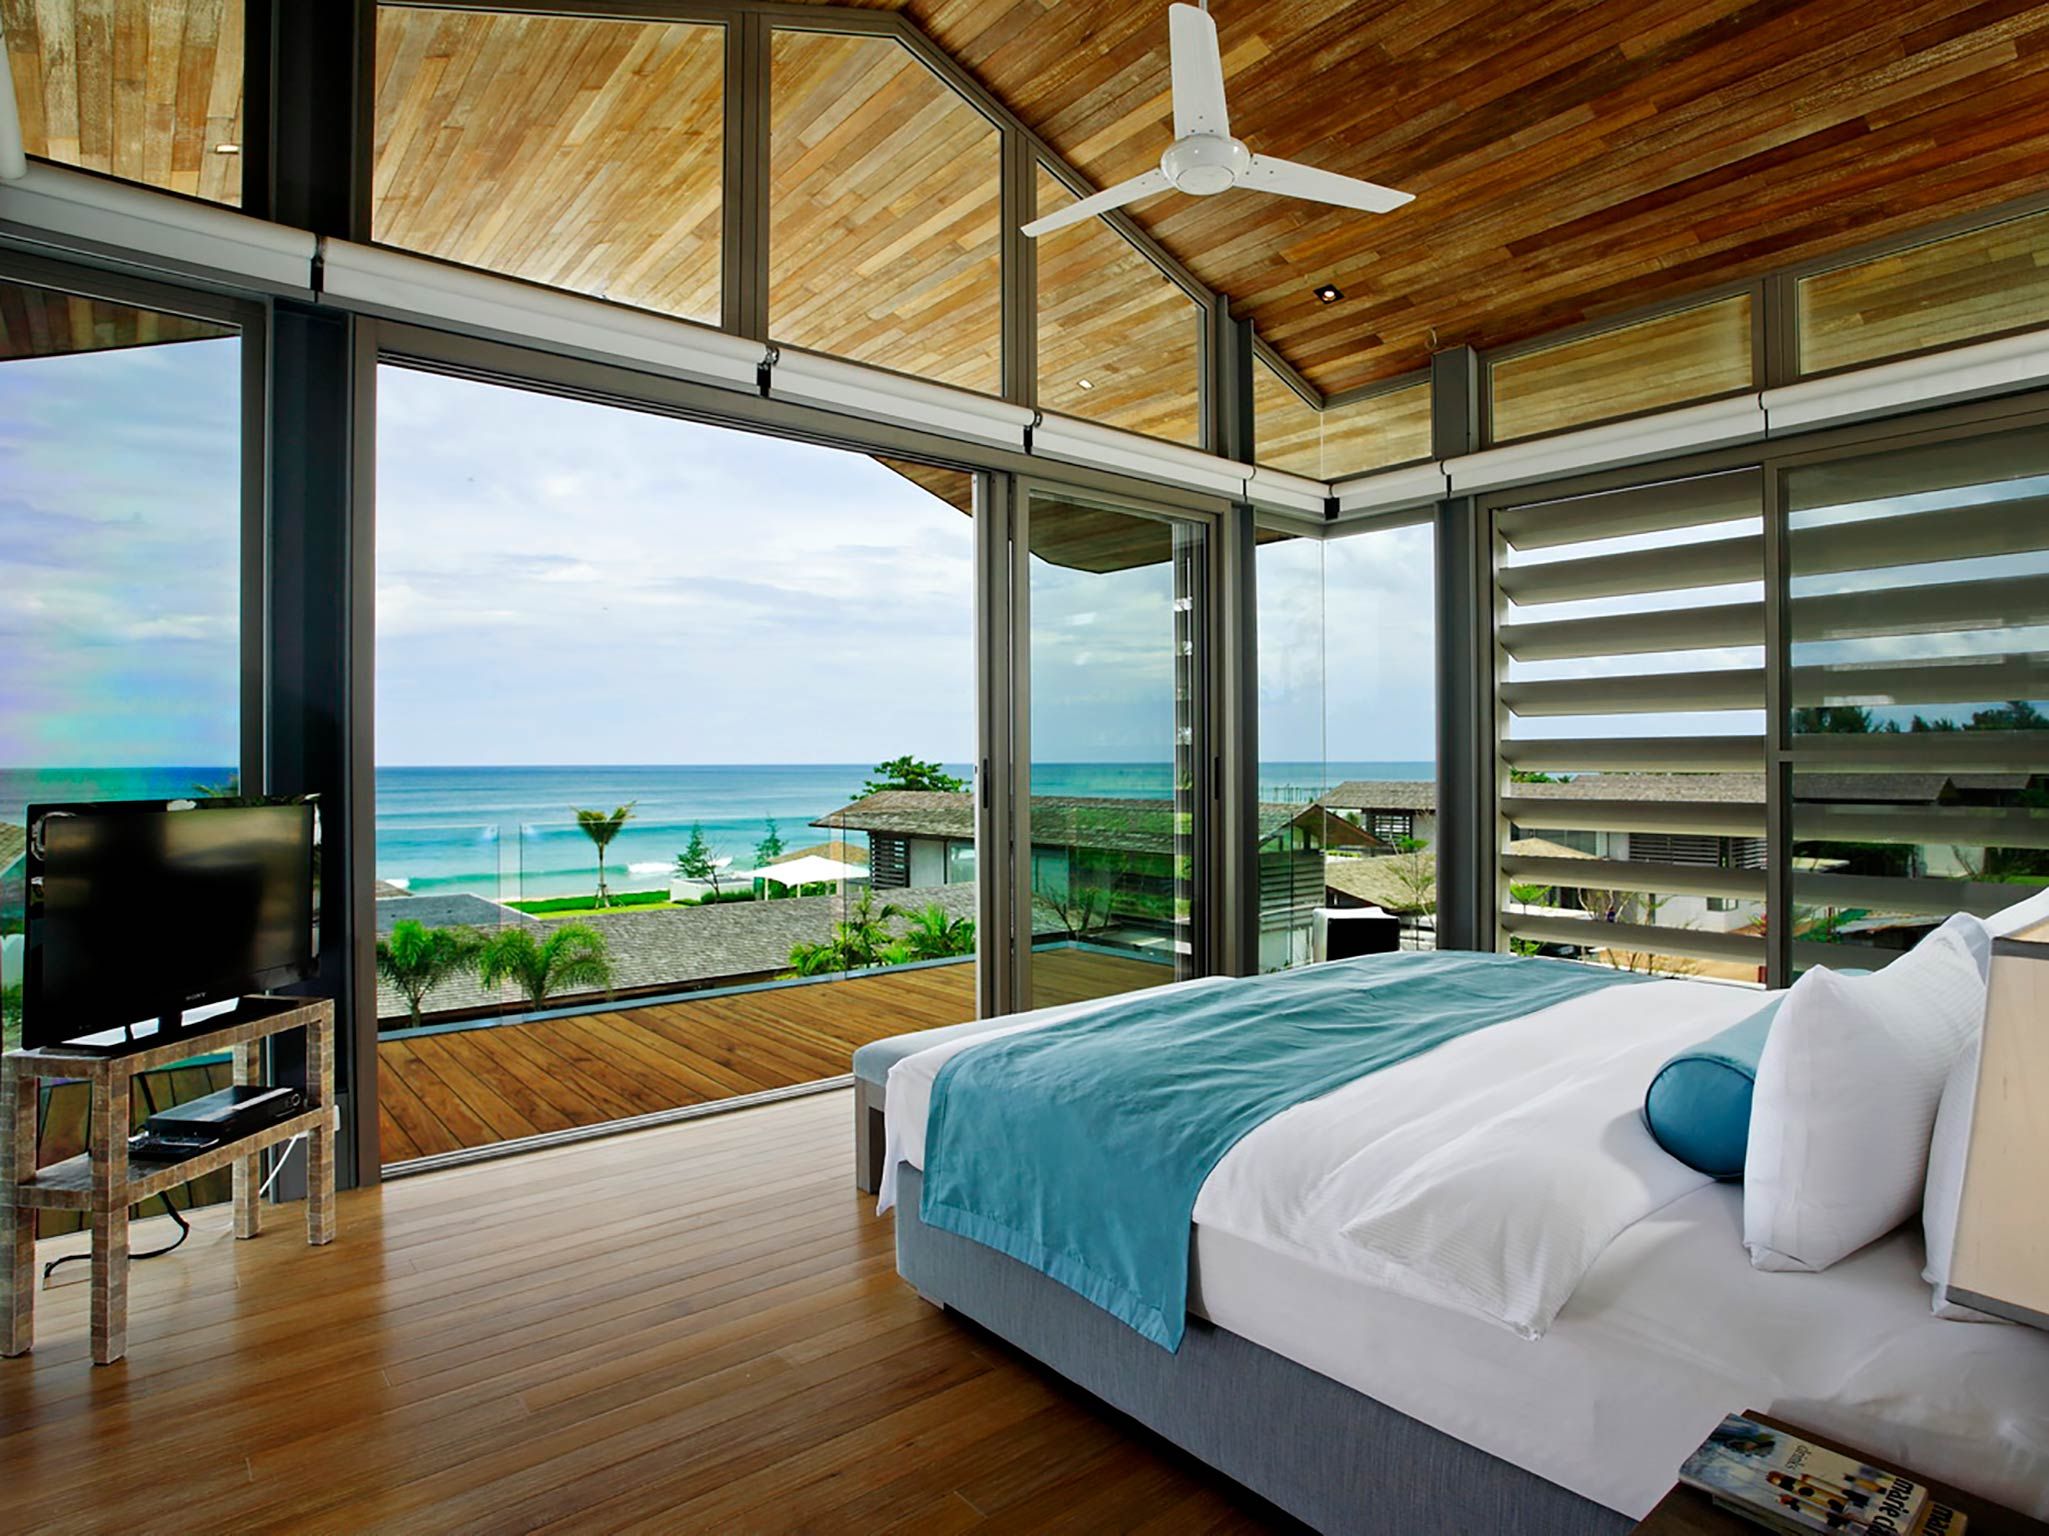 Villa Aqua - Outstanding view from bedroom